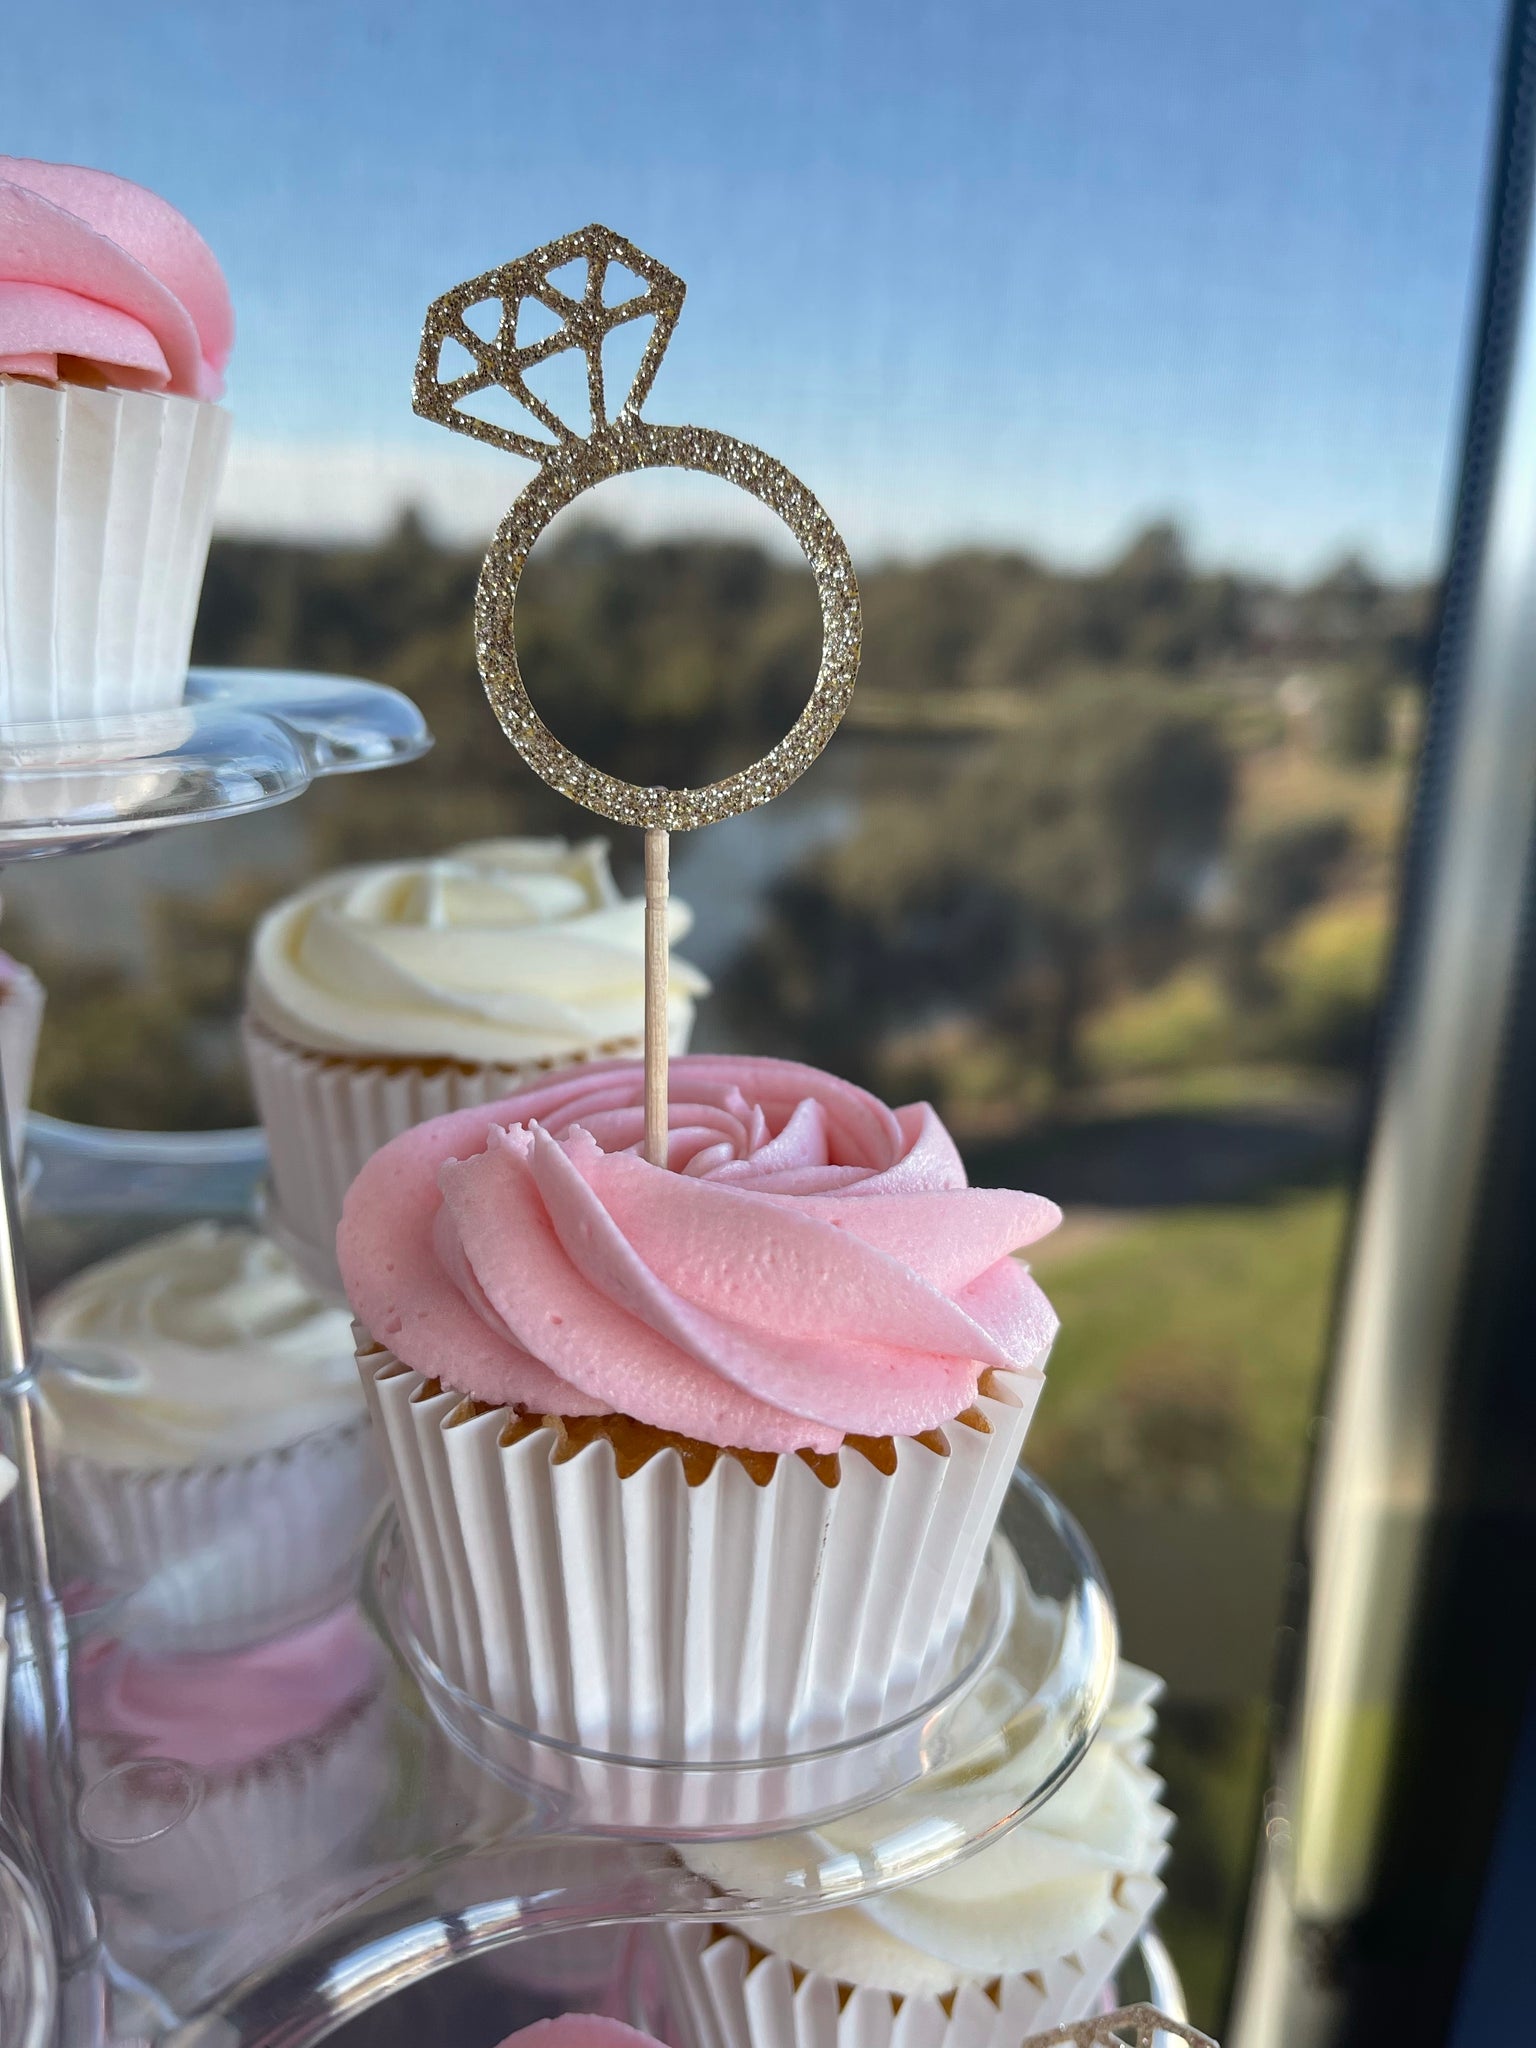 Diamond Ring Engagement Cupcake Cake - Crafty Morning